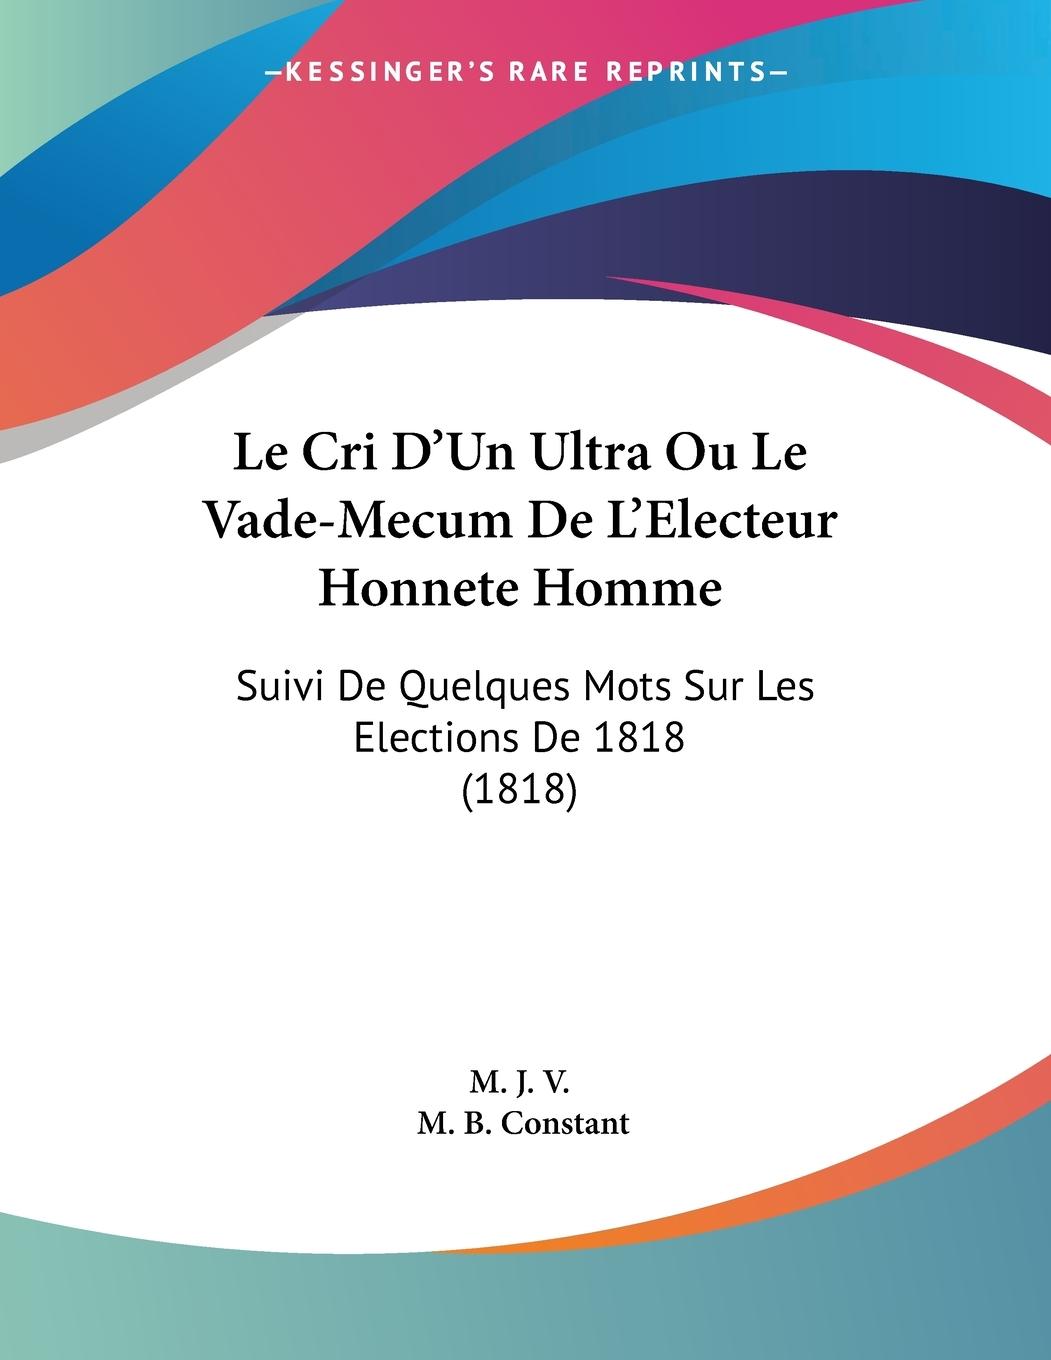 Le Cri D Un Ultra Ou Le Vade-Mecum De L Electeur Honnete Homme - M. J. V. Constant, M. B.